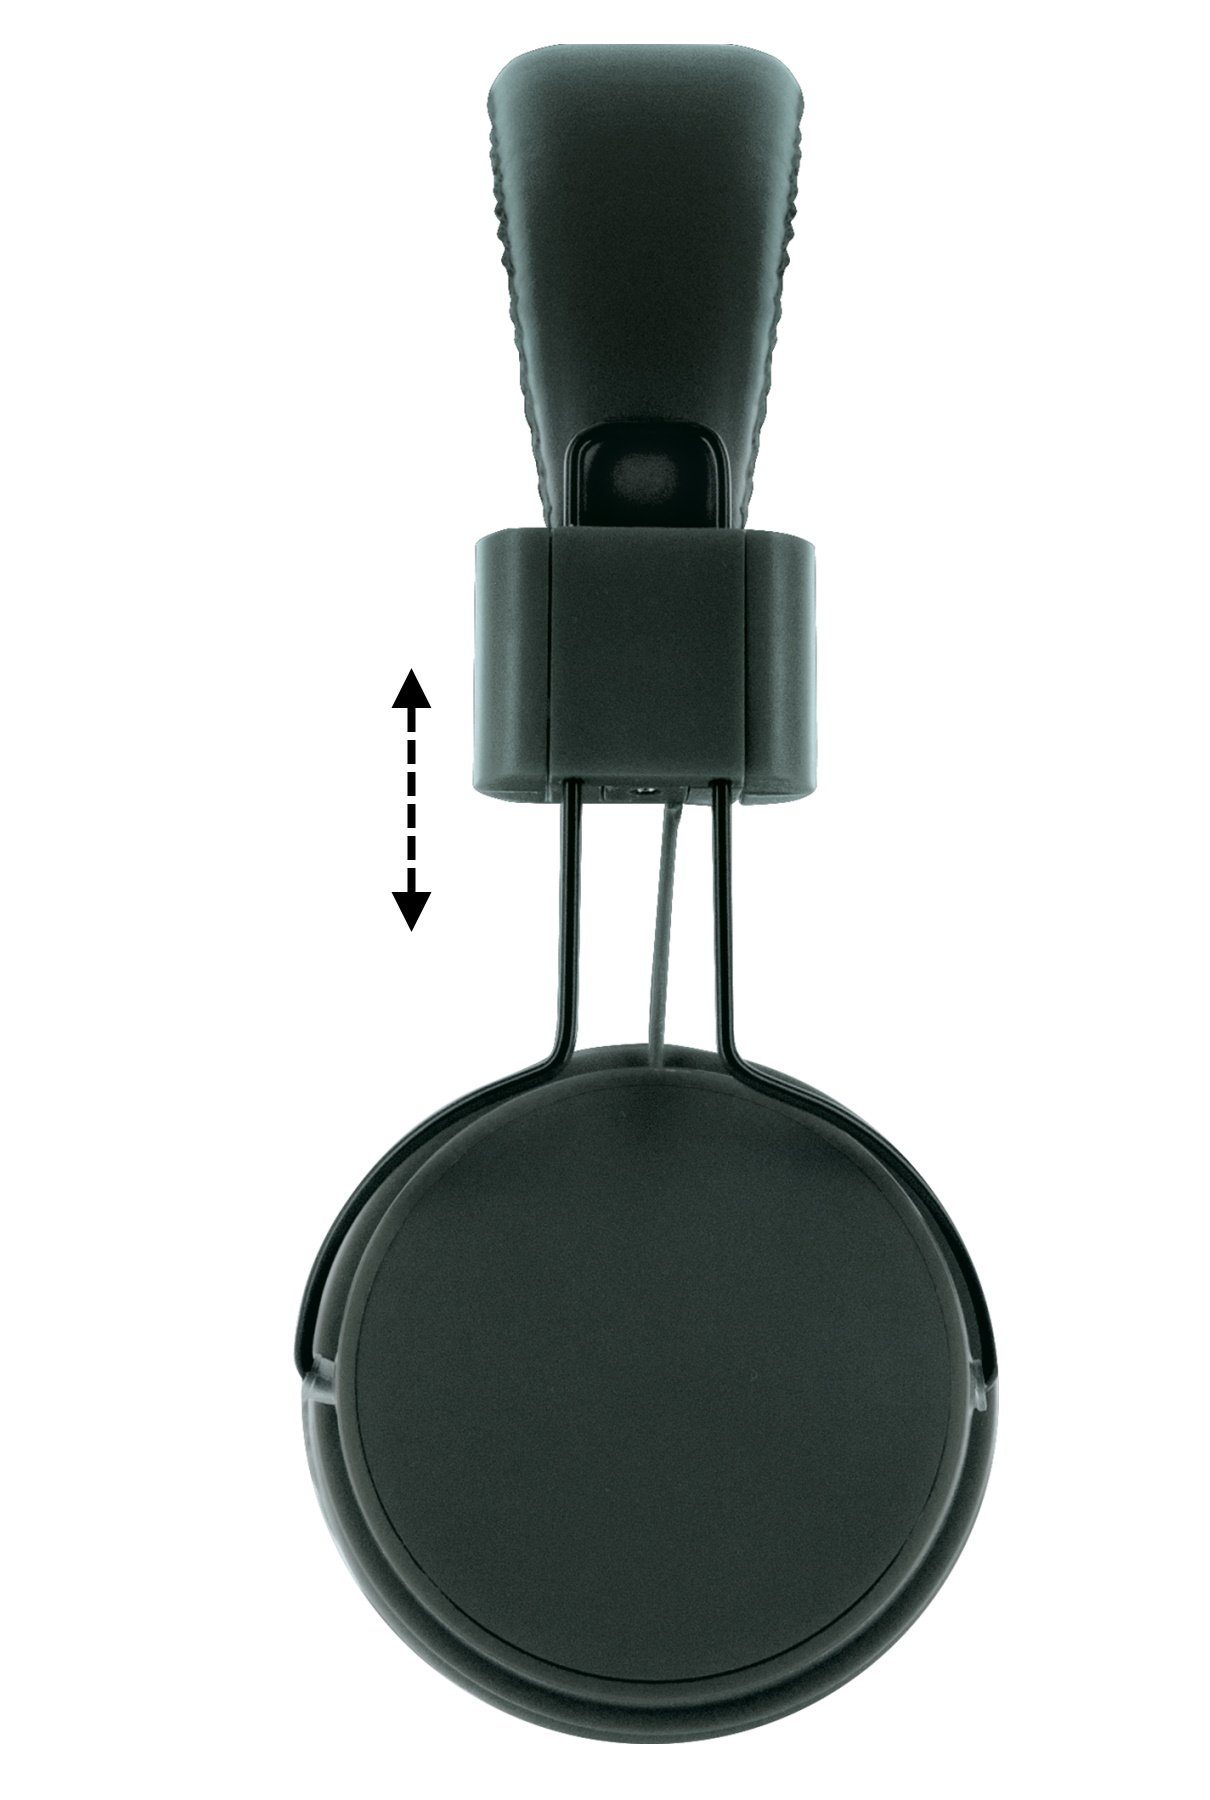 KH510S (einstellbare Schwaiger 513 Kopfhörerbügel) On-Ear-Kopfhörer